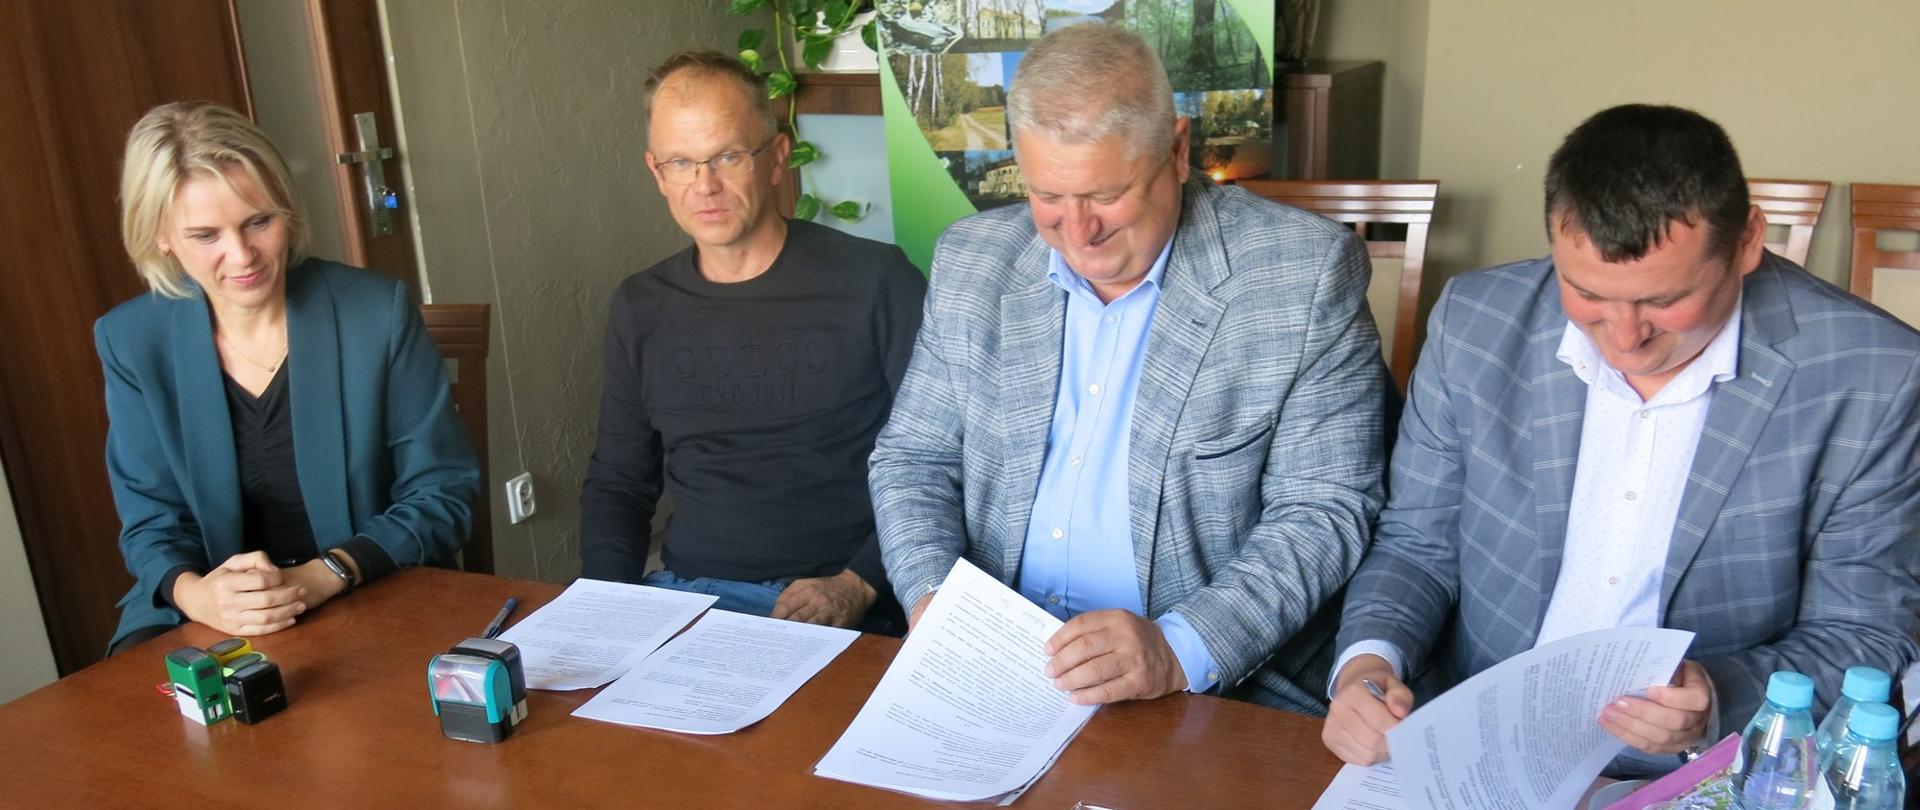 Od lewej: A.Sulińska skarbnik, T.Siedlanowski wykonawca, J.Kobyliński starosta, M.Michaluk wicestarosta